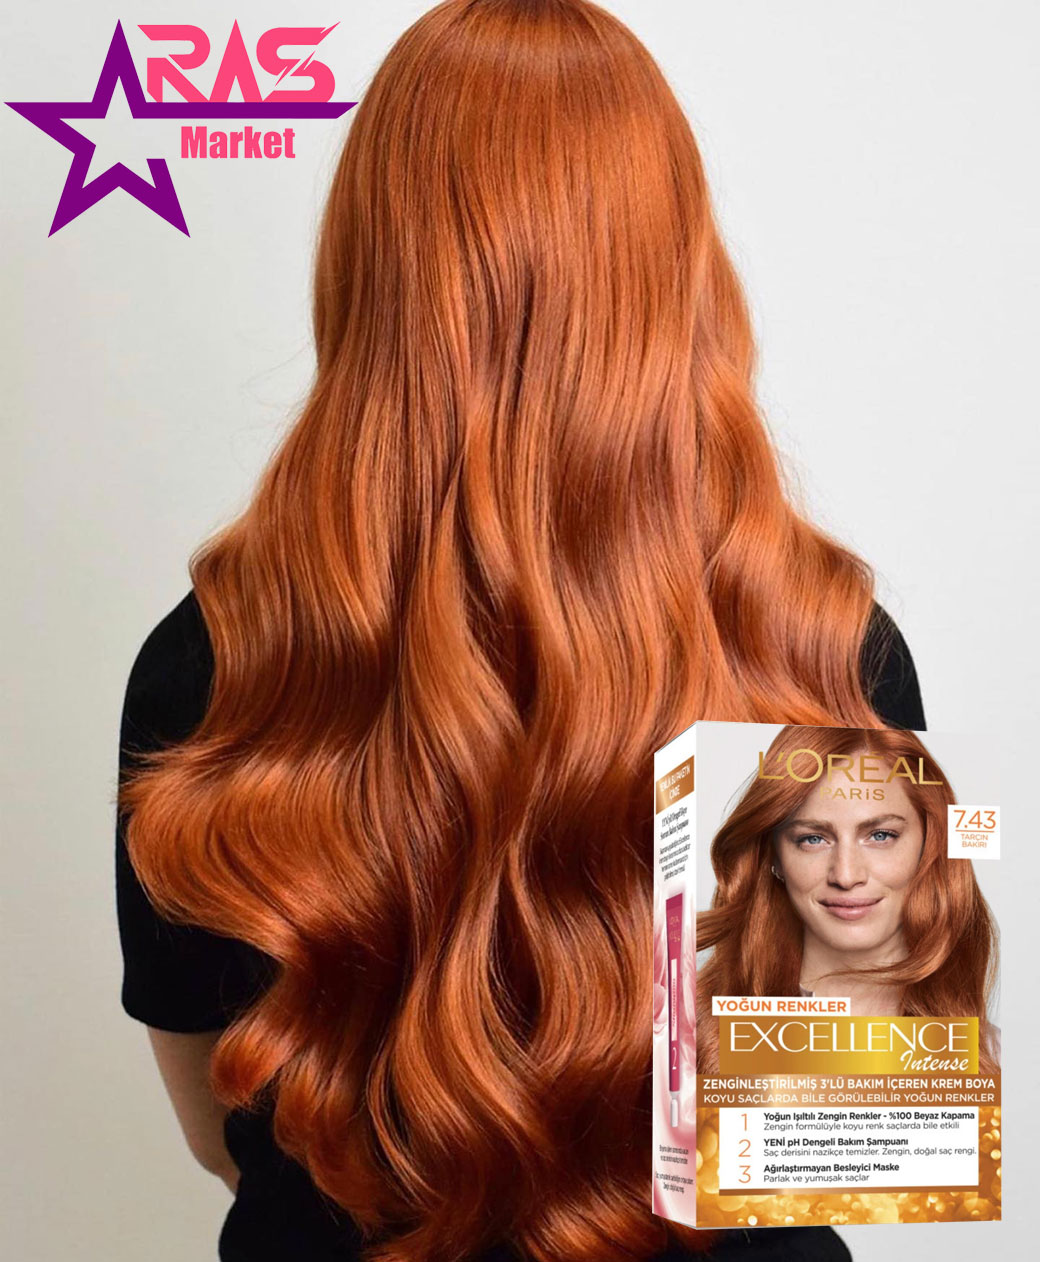 کیت رنگ مو لورآل سری Excellence Intense شماره 7.43 ، خرید اینترنتی محصولات شوینده و بهداشتی ، ارس مارکت